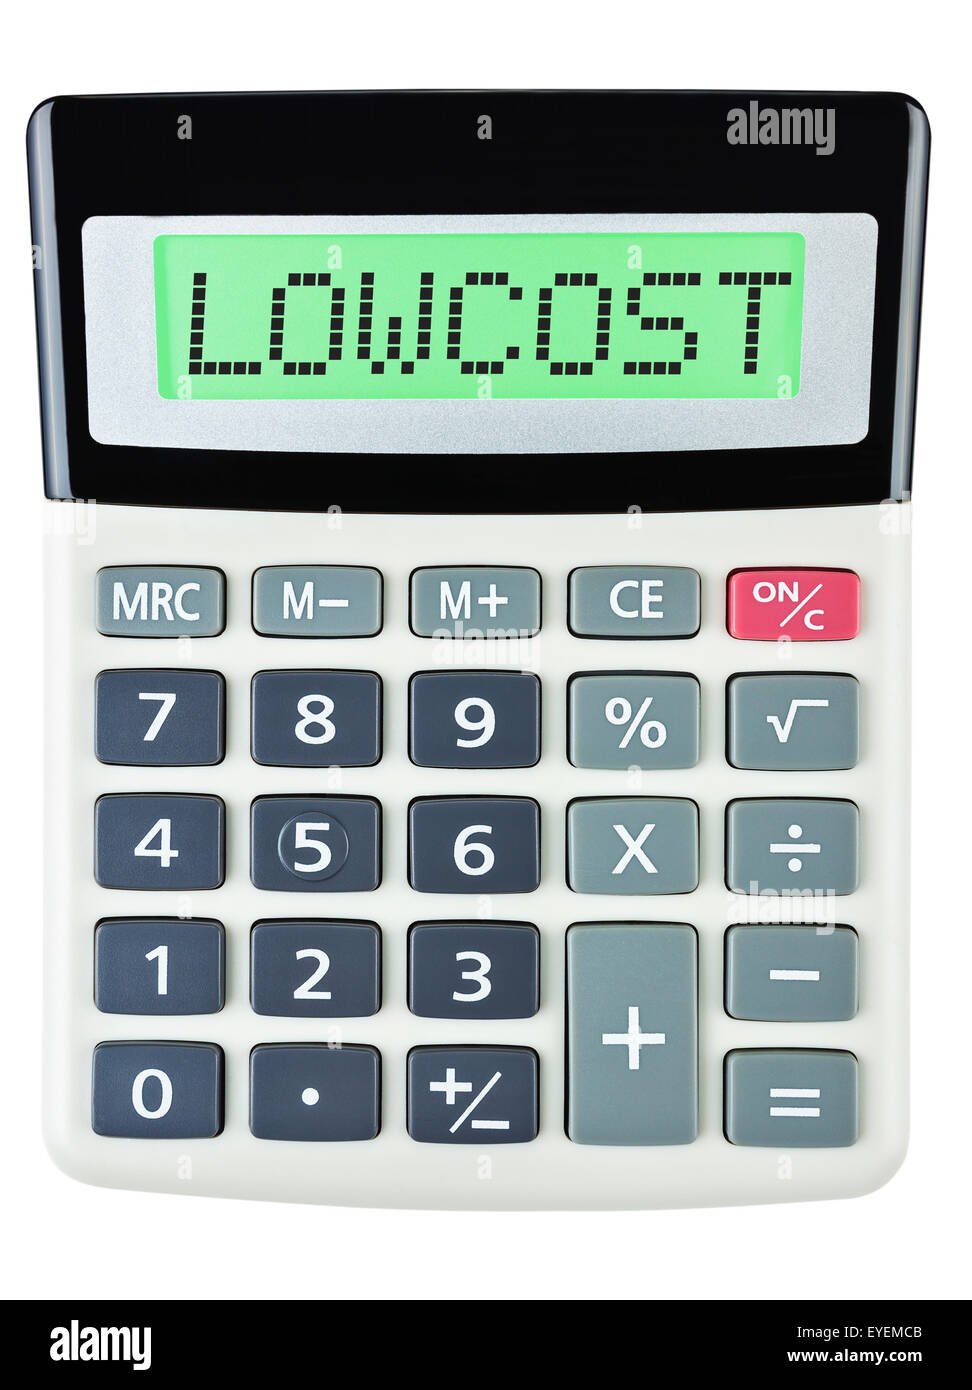 Calculatrice avec LOWCOST sur l'affichage isolé sur fond blanc Banque D'Images